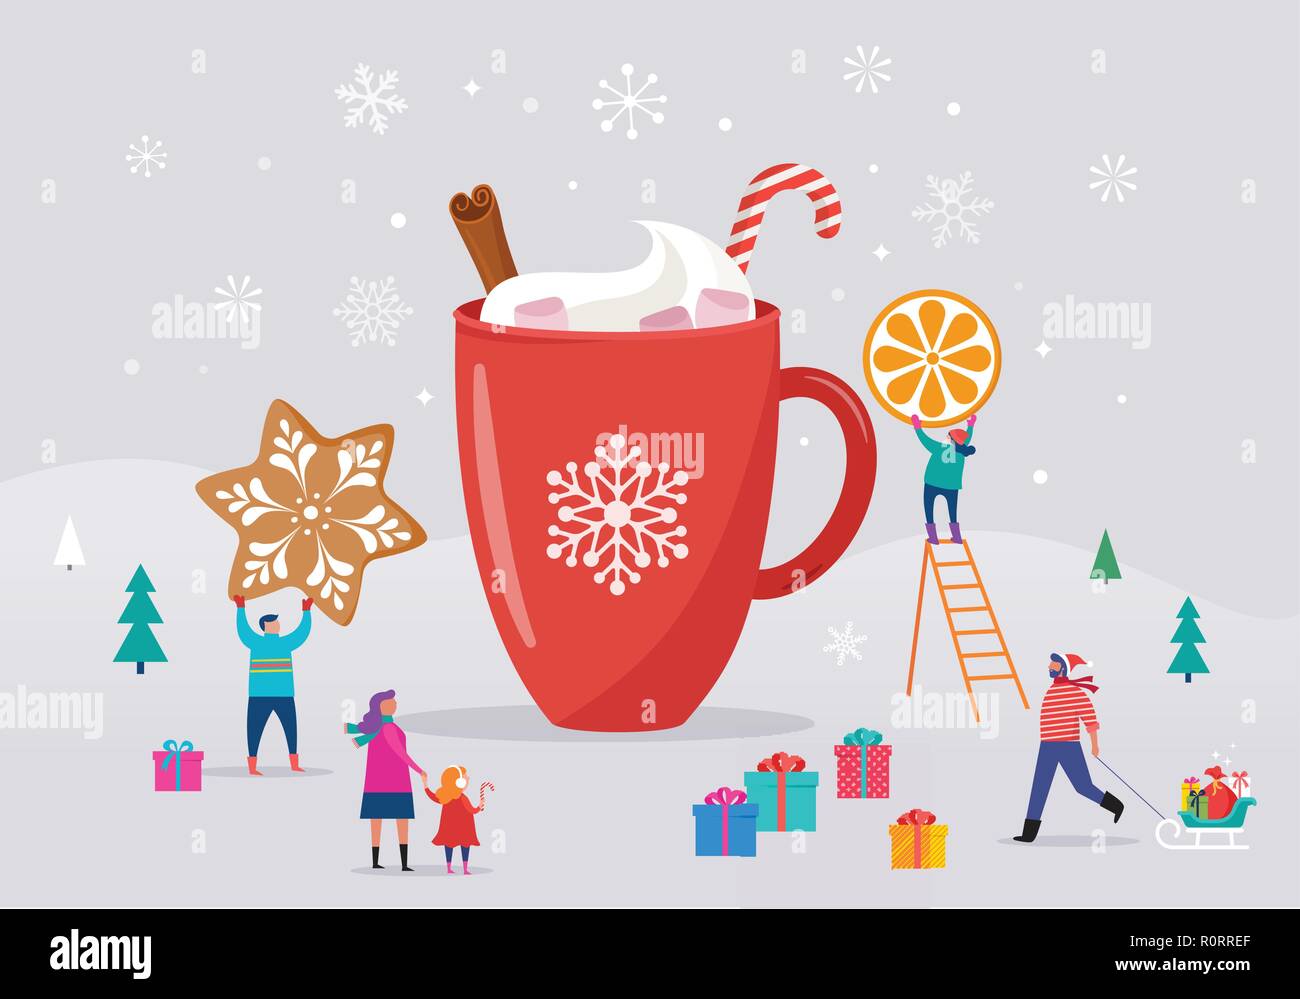 Joyeux Noël, scène d'hiver avec une grande tasse de cacao et les petites gens, les jeunes, hommes et femmes, des familles s'amusant dans la neige, ski, snowboard, luge, patinage sur glace Illustration de Vecteur